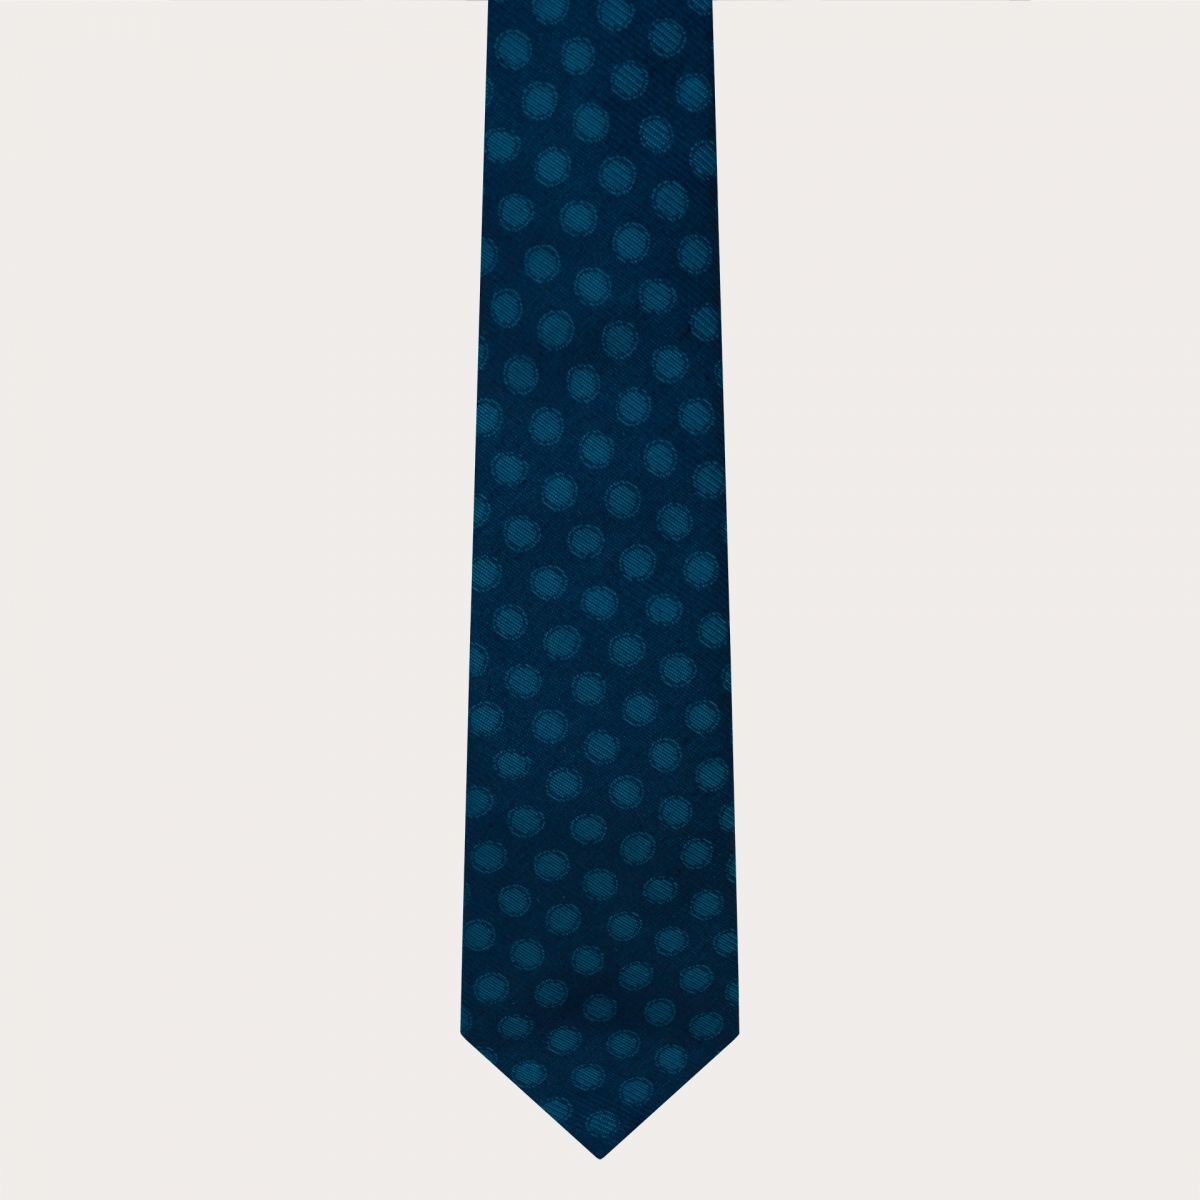 Elegante corbata de seda azul con lunares petróleo